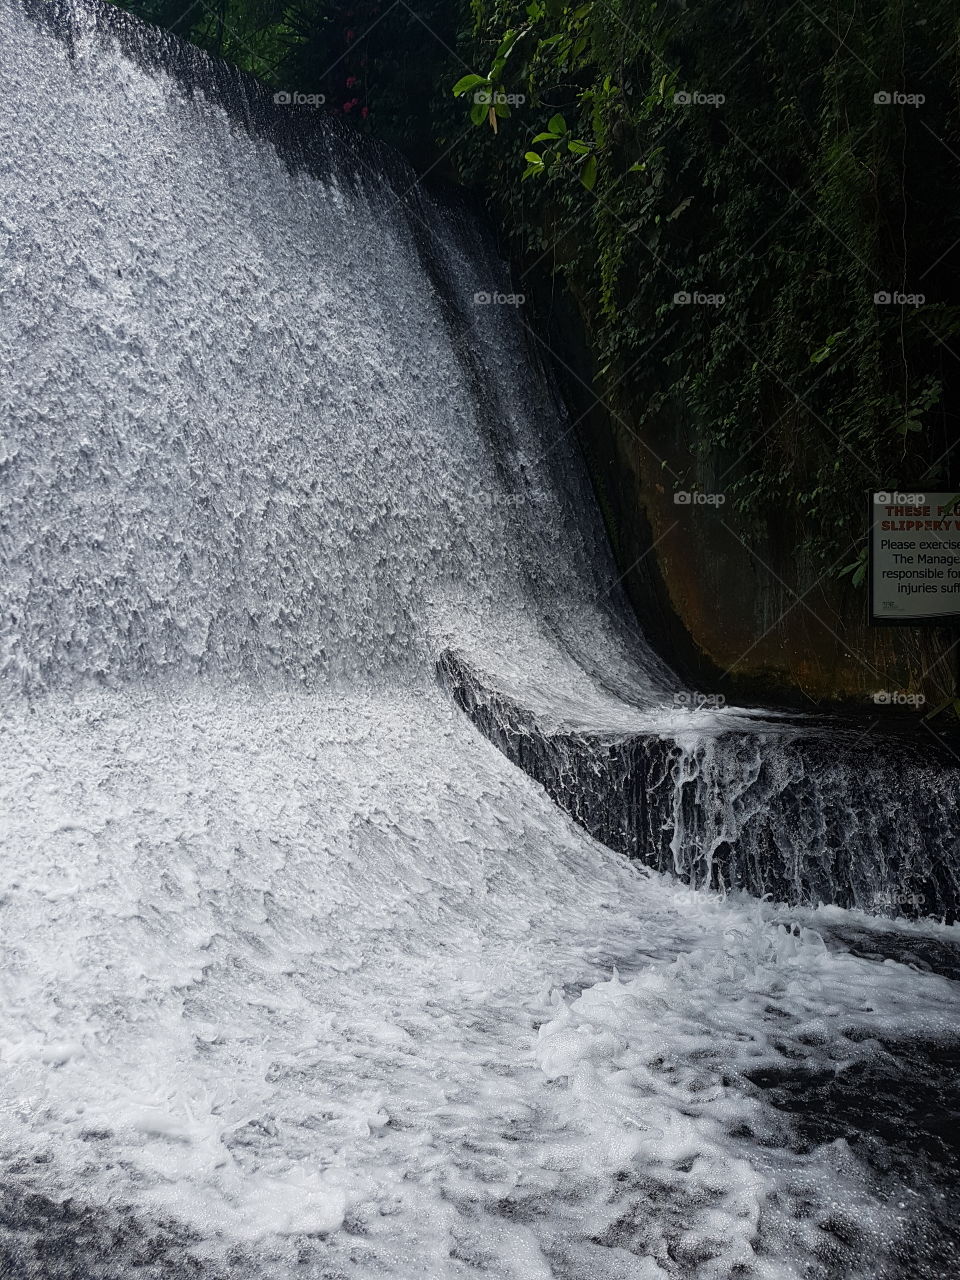 A beautiful man-made waterfalls